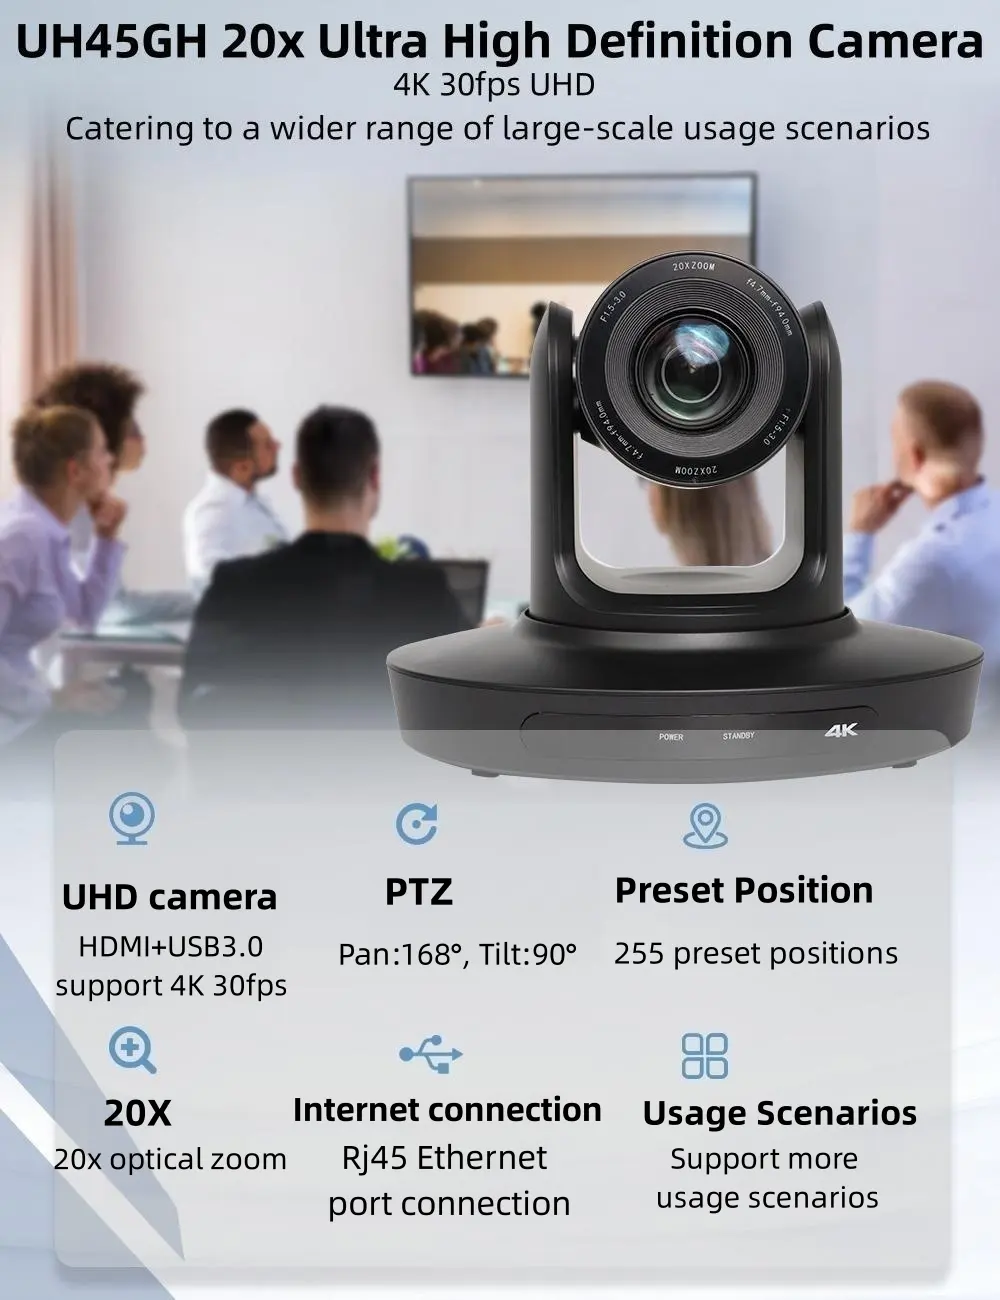 4k sdi networking devices ptz 4k ndi video conference ptz broadcast 4k camera ptz ndi uhd camera for live streaming